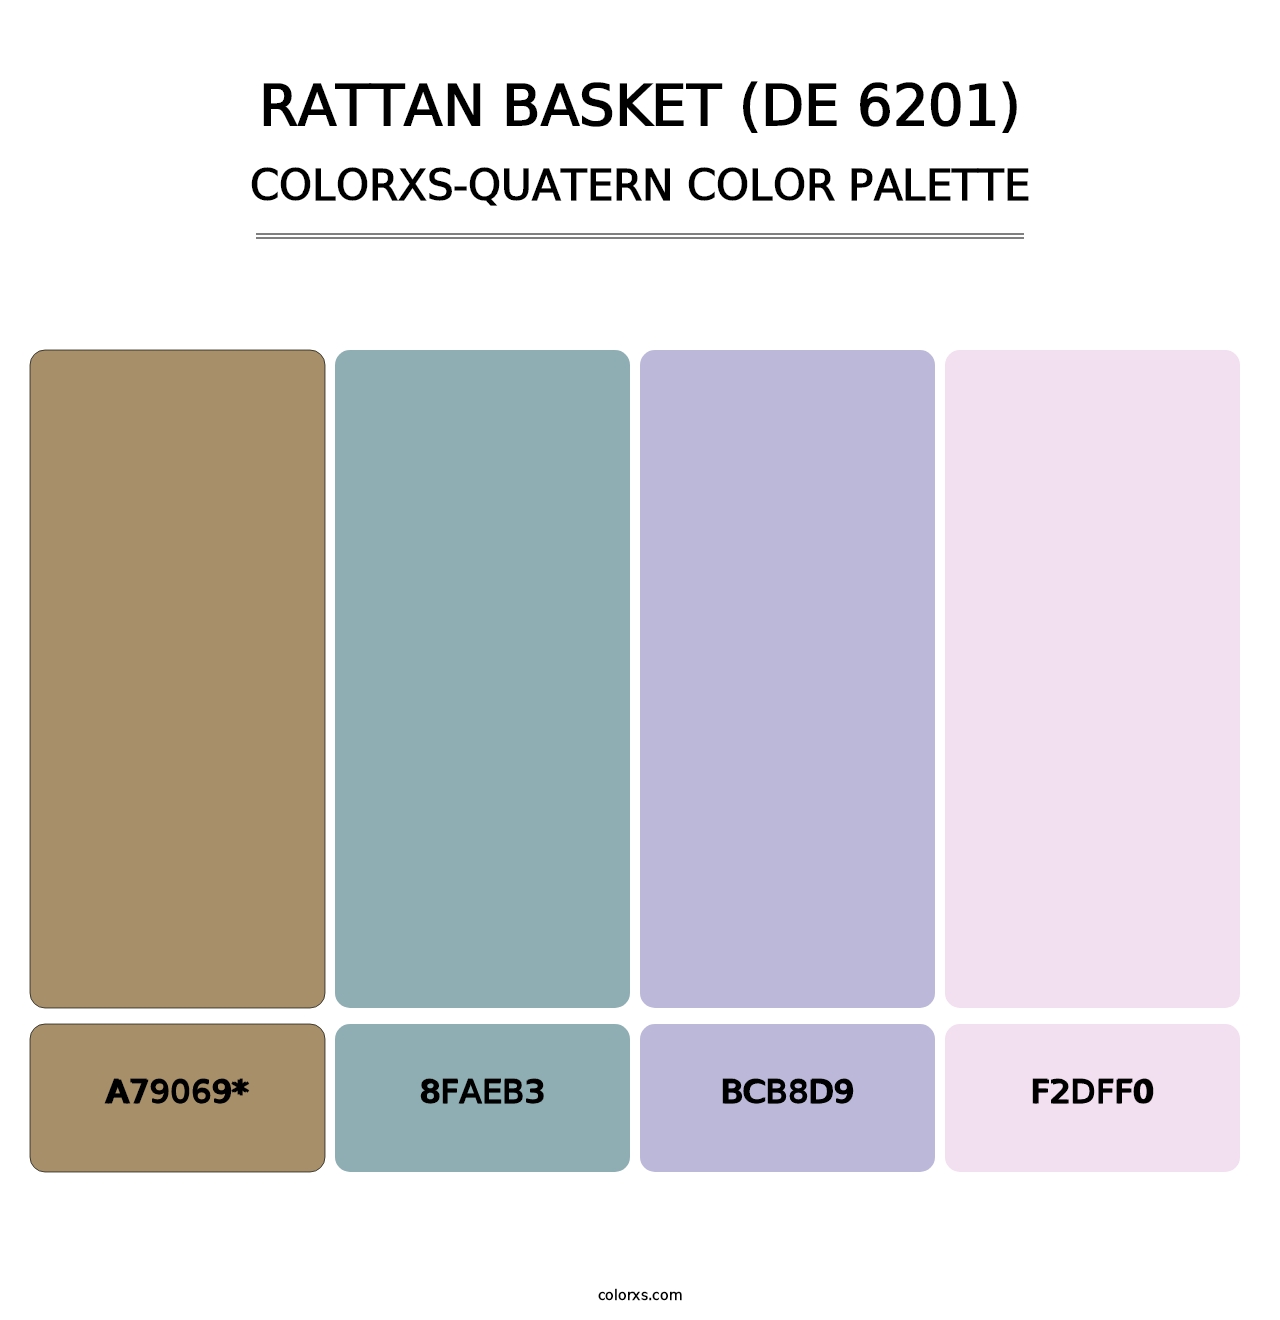 Rattan Basket (DE 6201) - Colorxs Quatern Palette